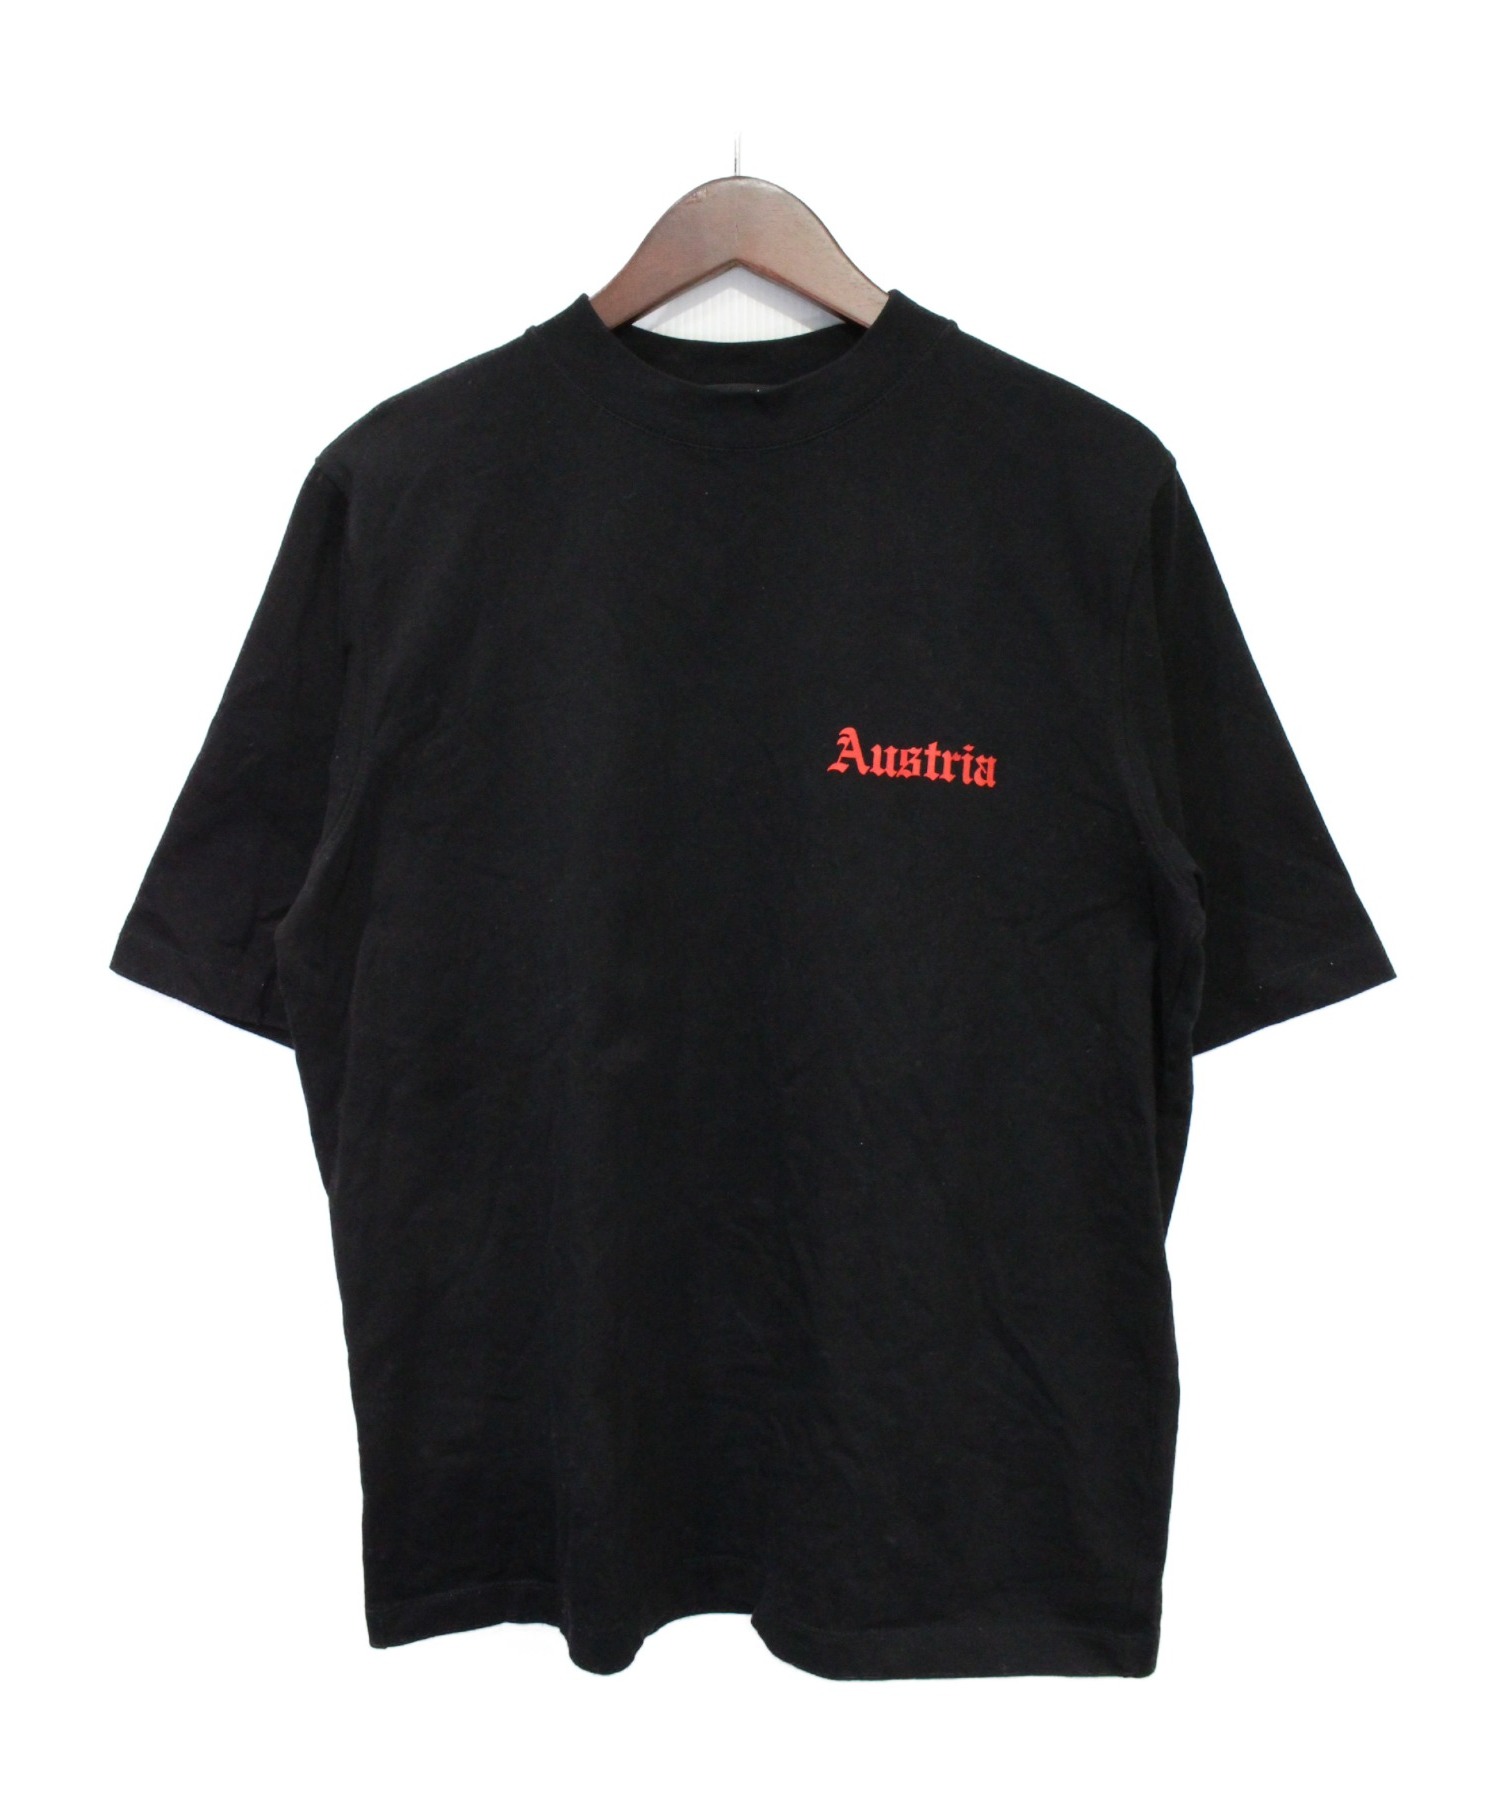 HELMUT LANG (ヘルムートラング) Austria Tシャツ ブラック サイズ:S